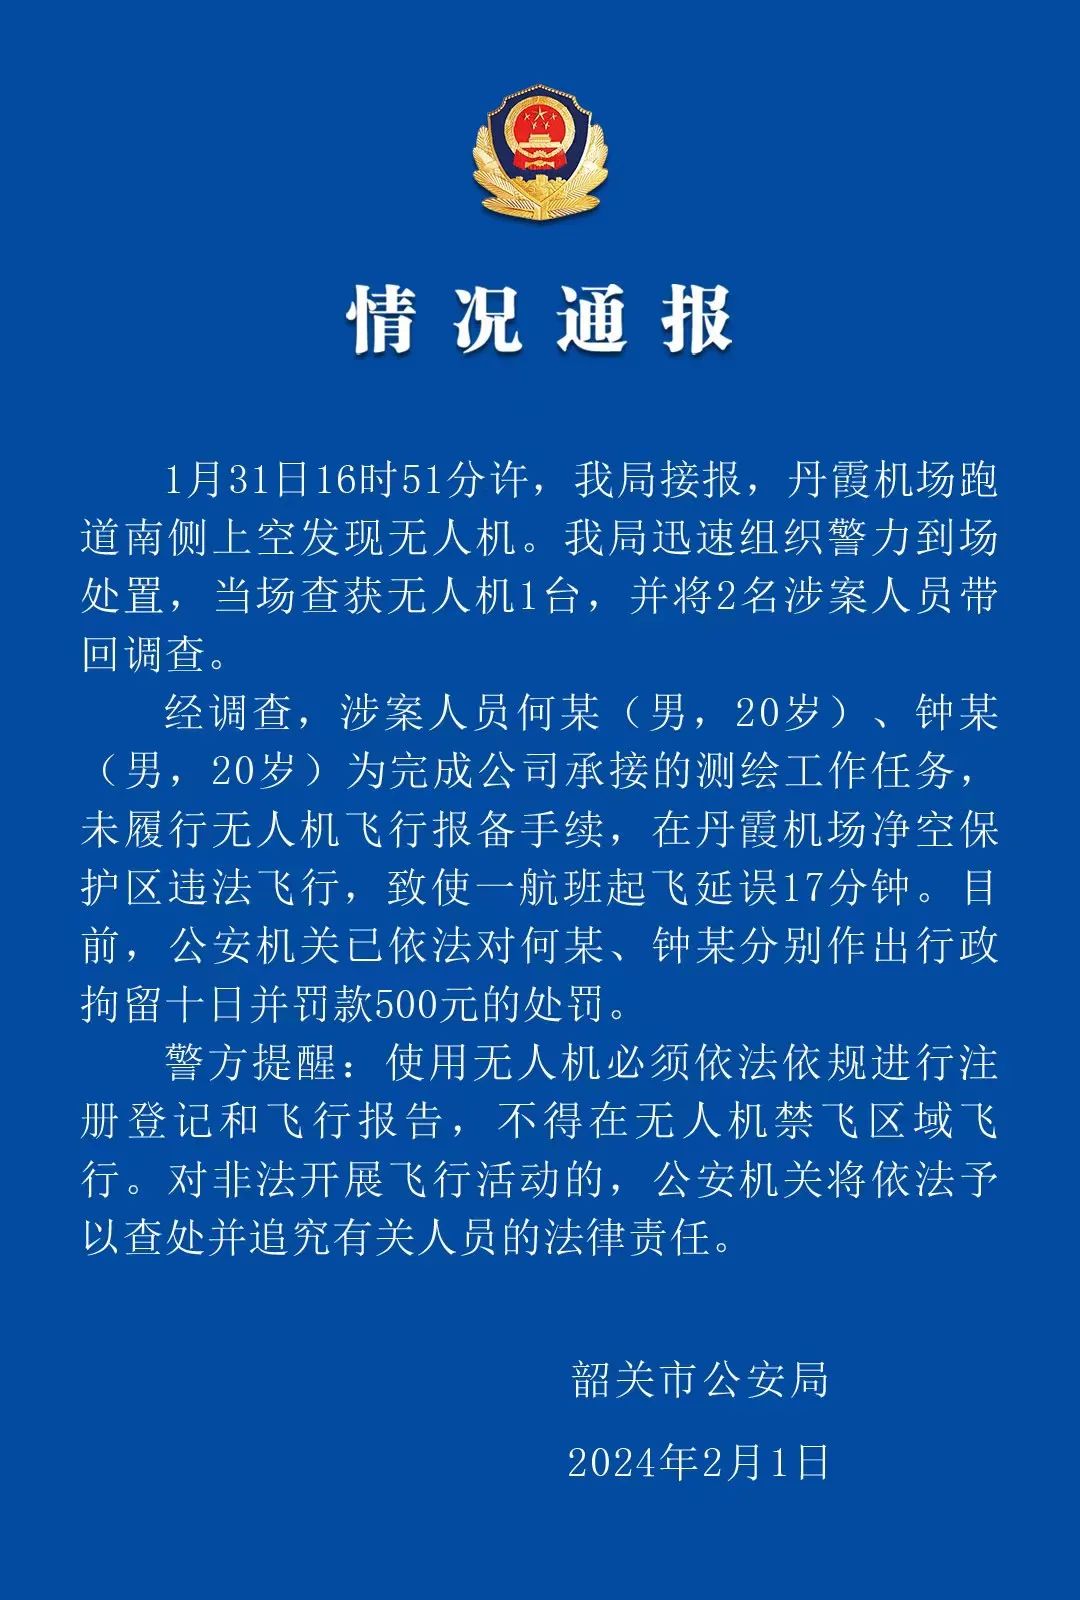 无人机黑飞致航班延误 广东韶关2名男子被行拘十日并罚款